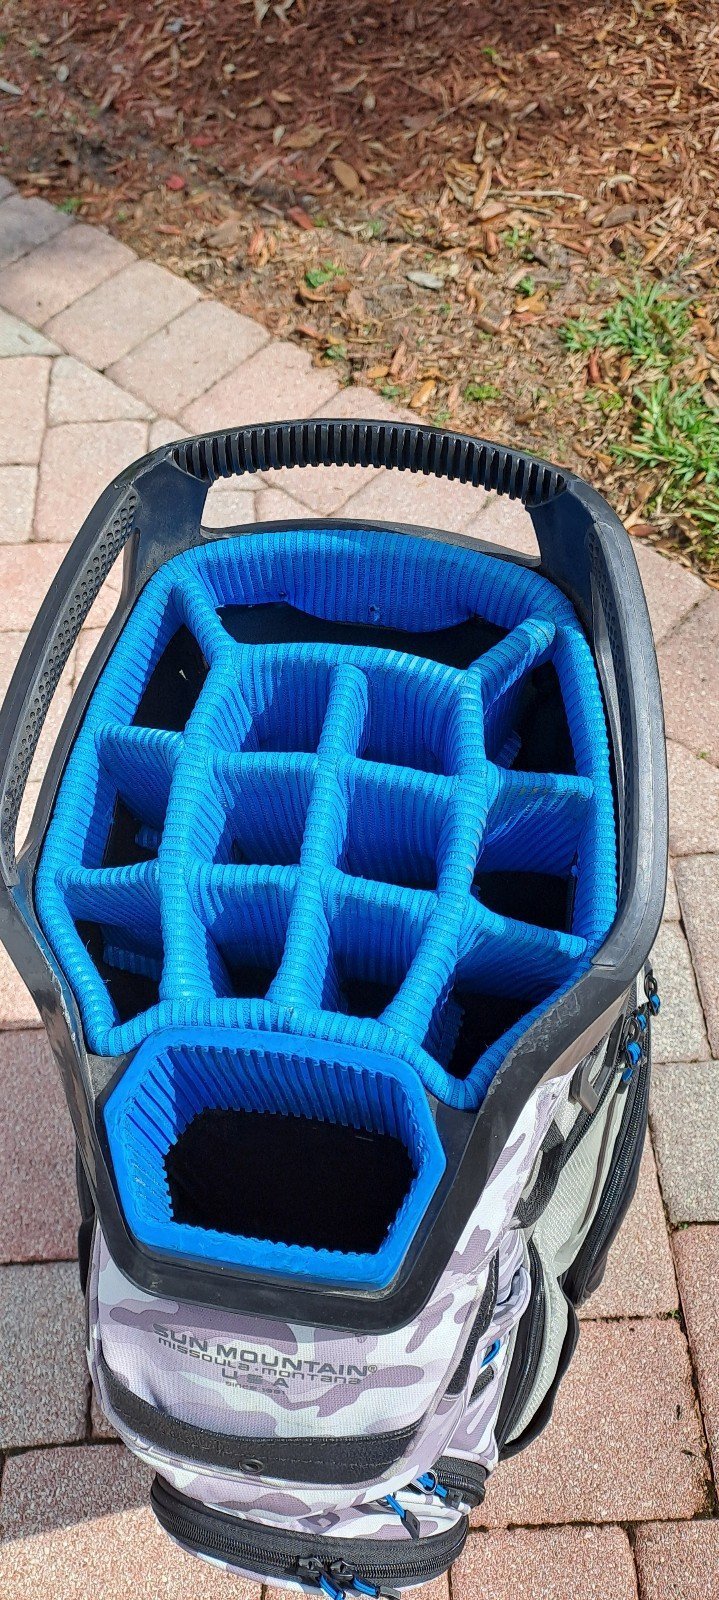 golf cart bag SUN MOUNTAIN 14 div shoulder strap rain cover cooler pocket many p giG7LGecm